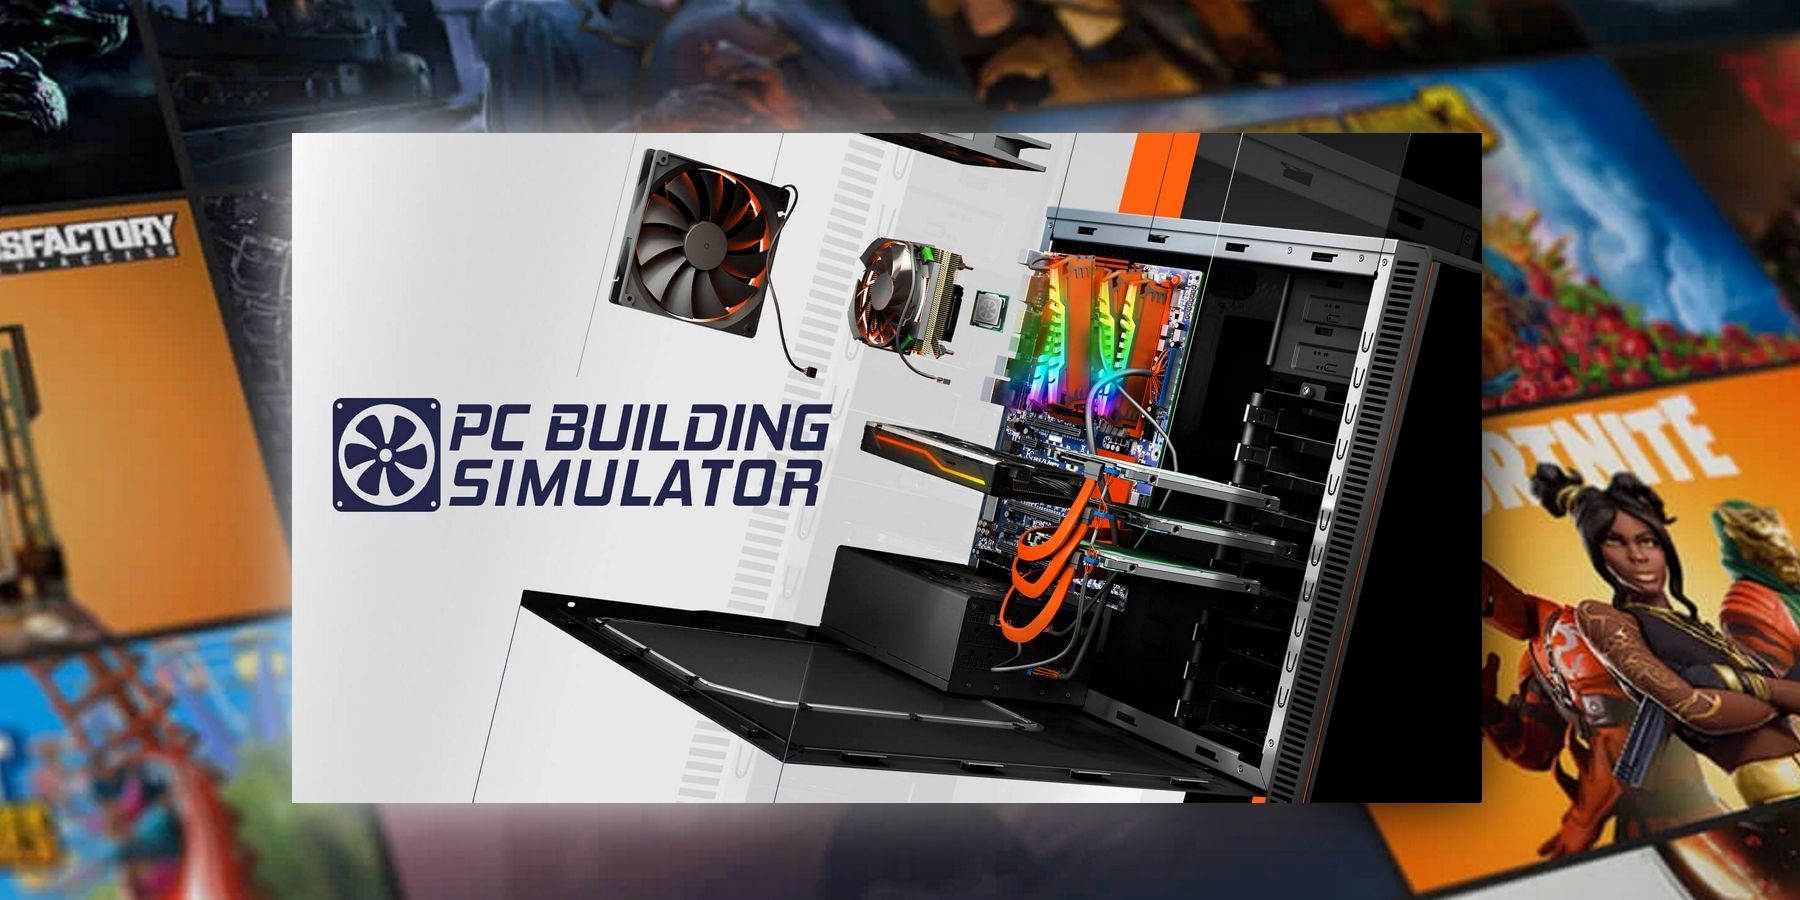 Epic Games Store Gratis spel PC Building Simulator Explained